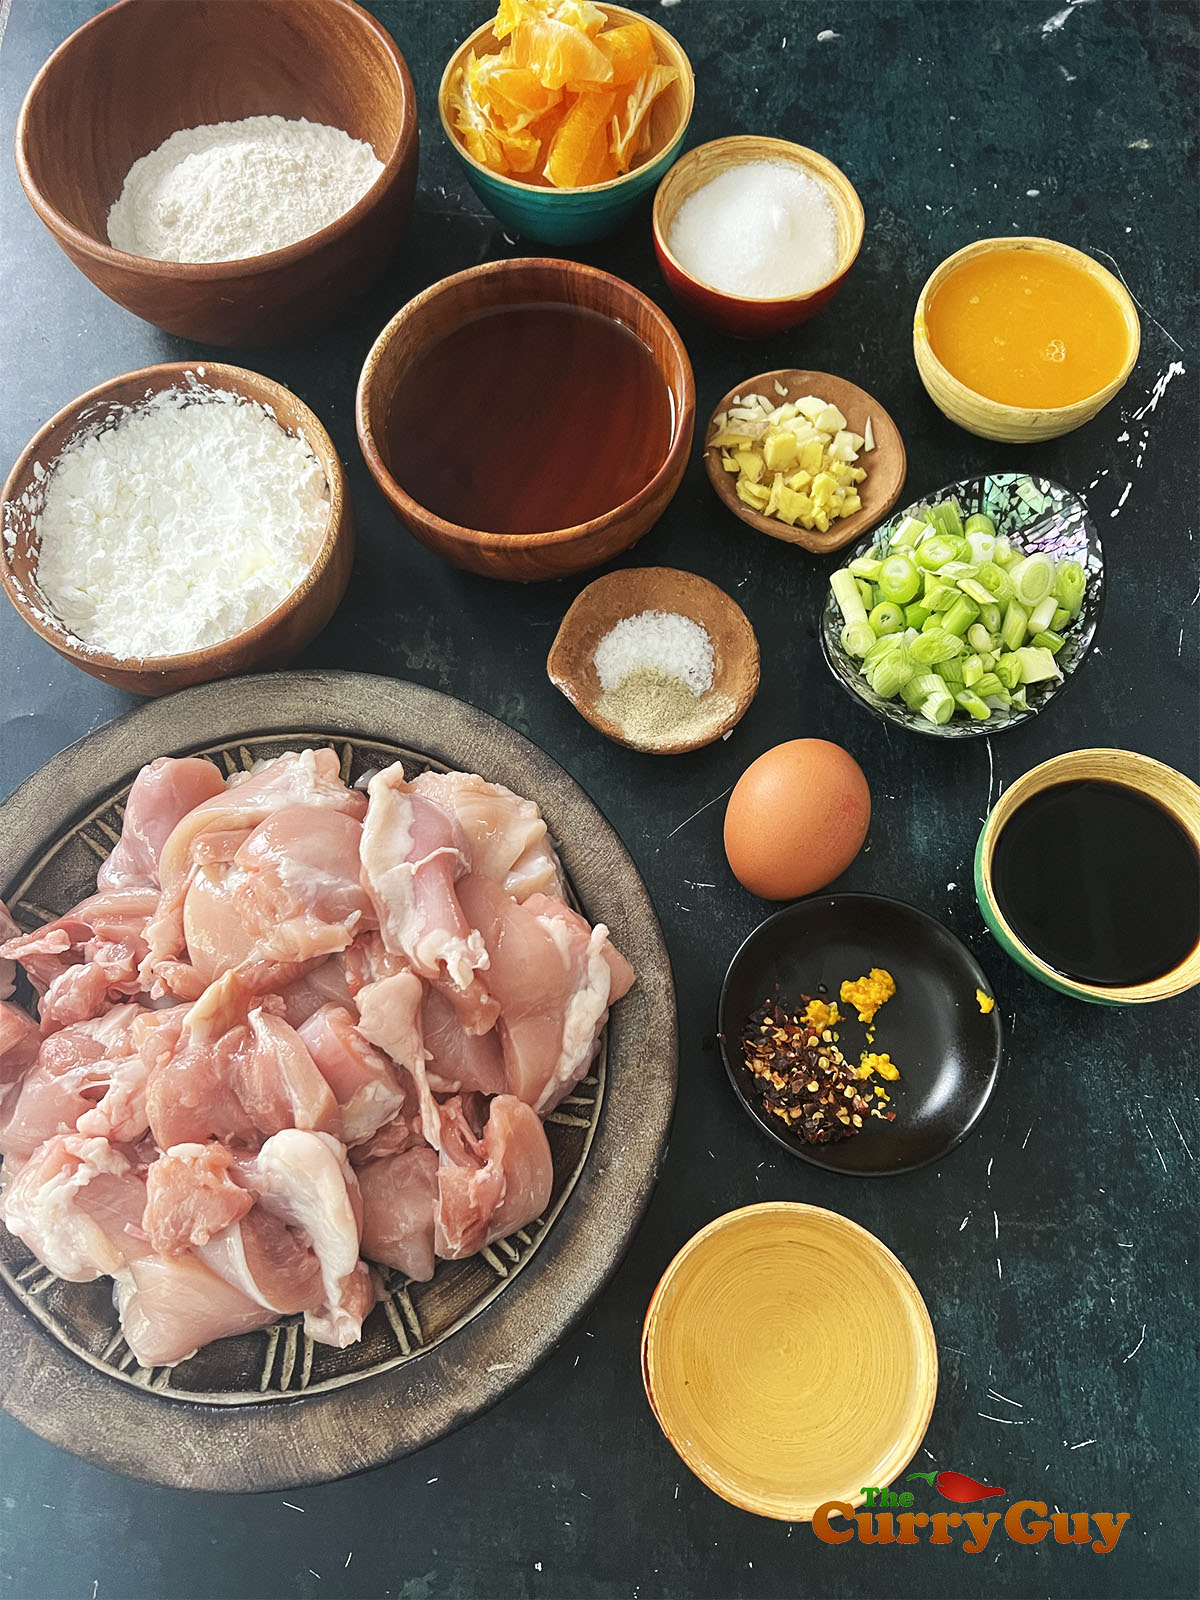 Ingredients for Chinese orange chicken